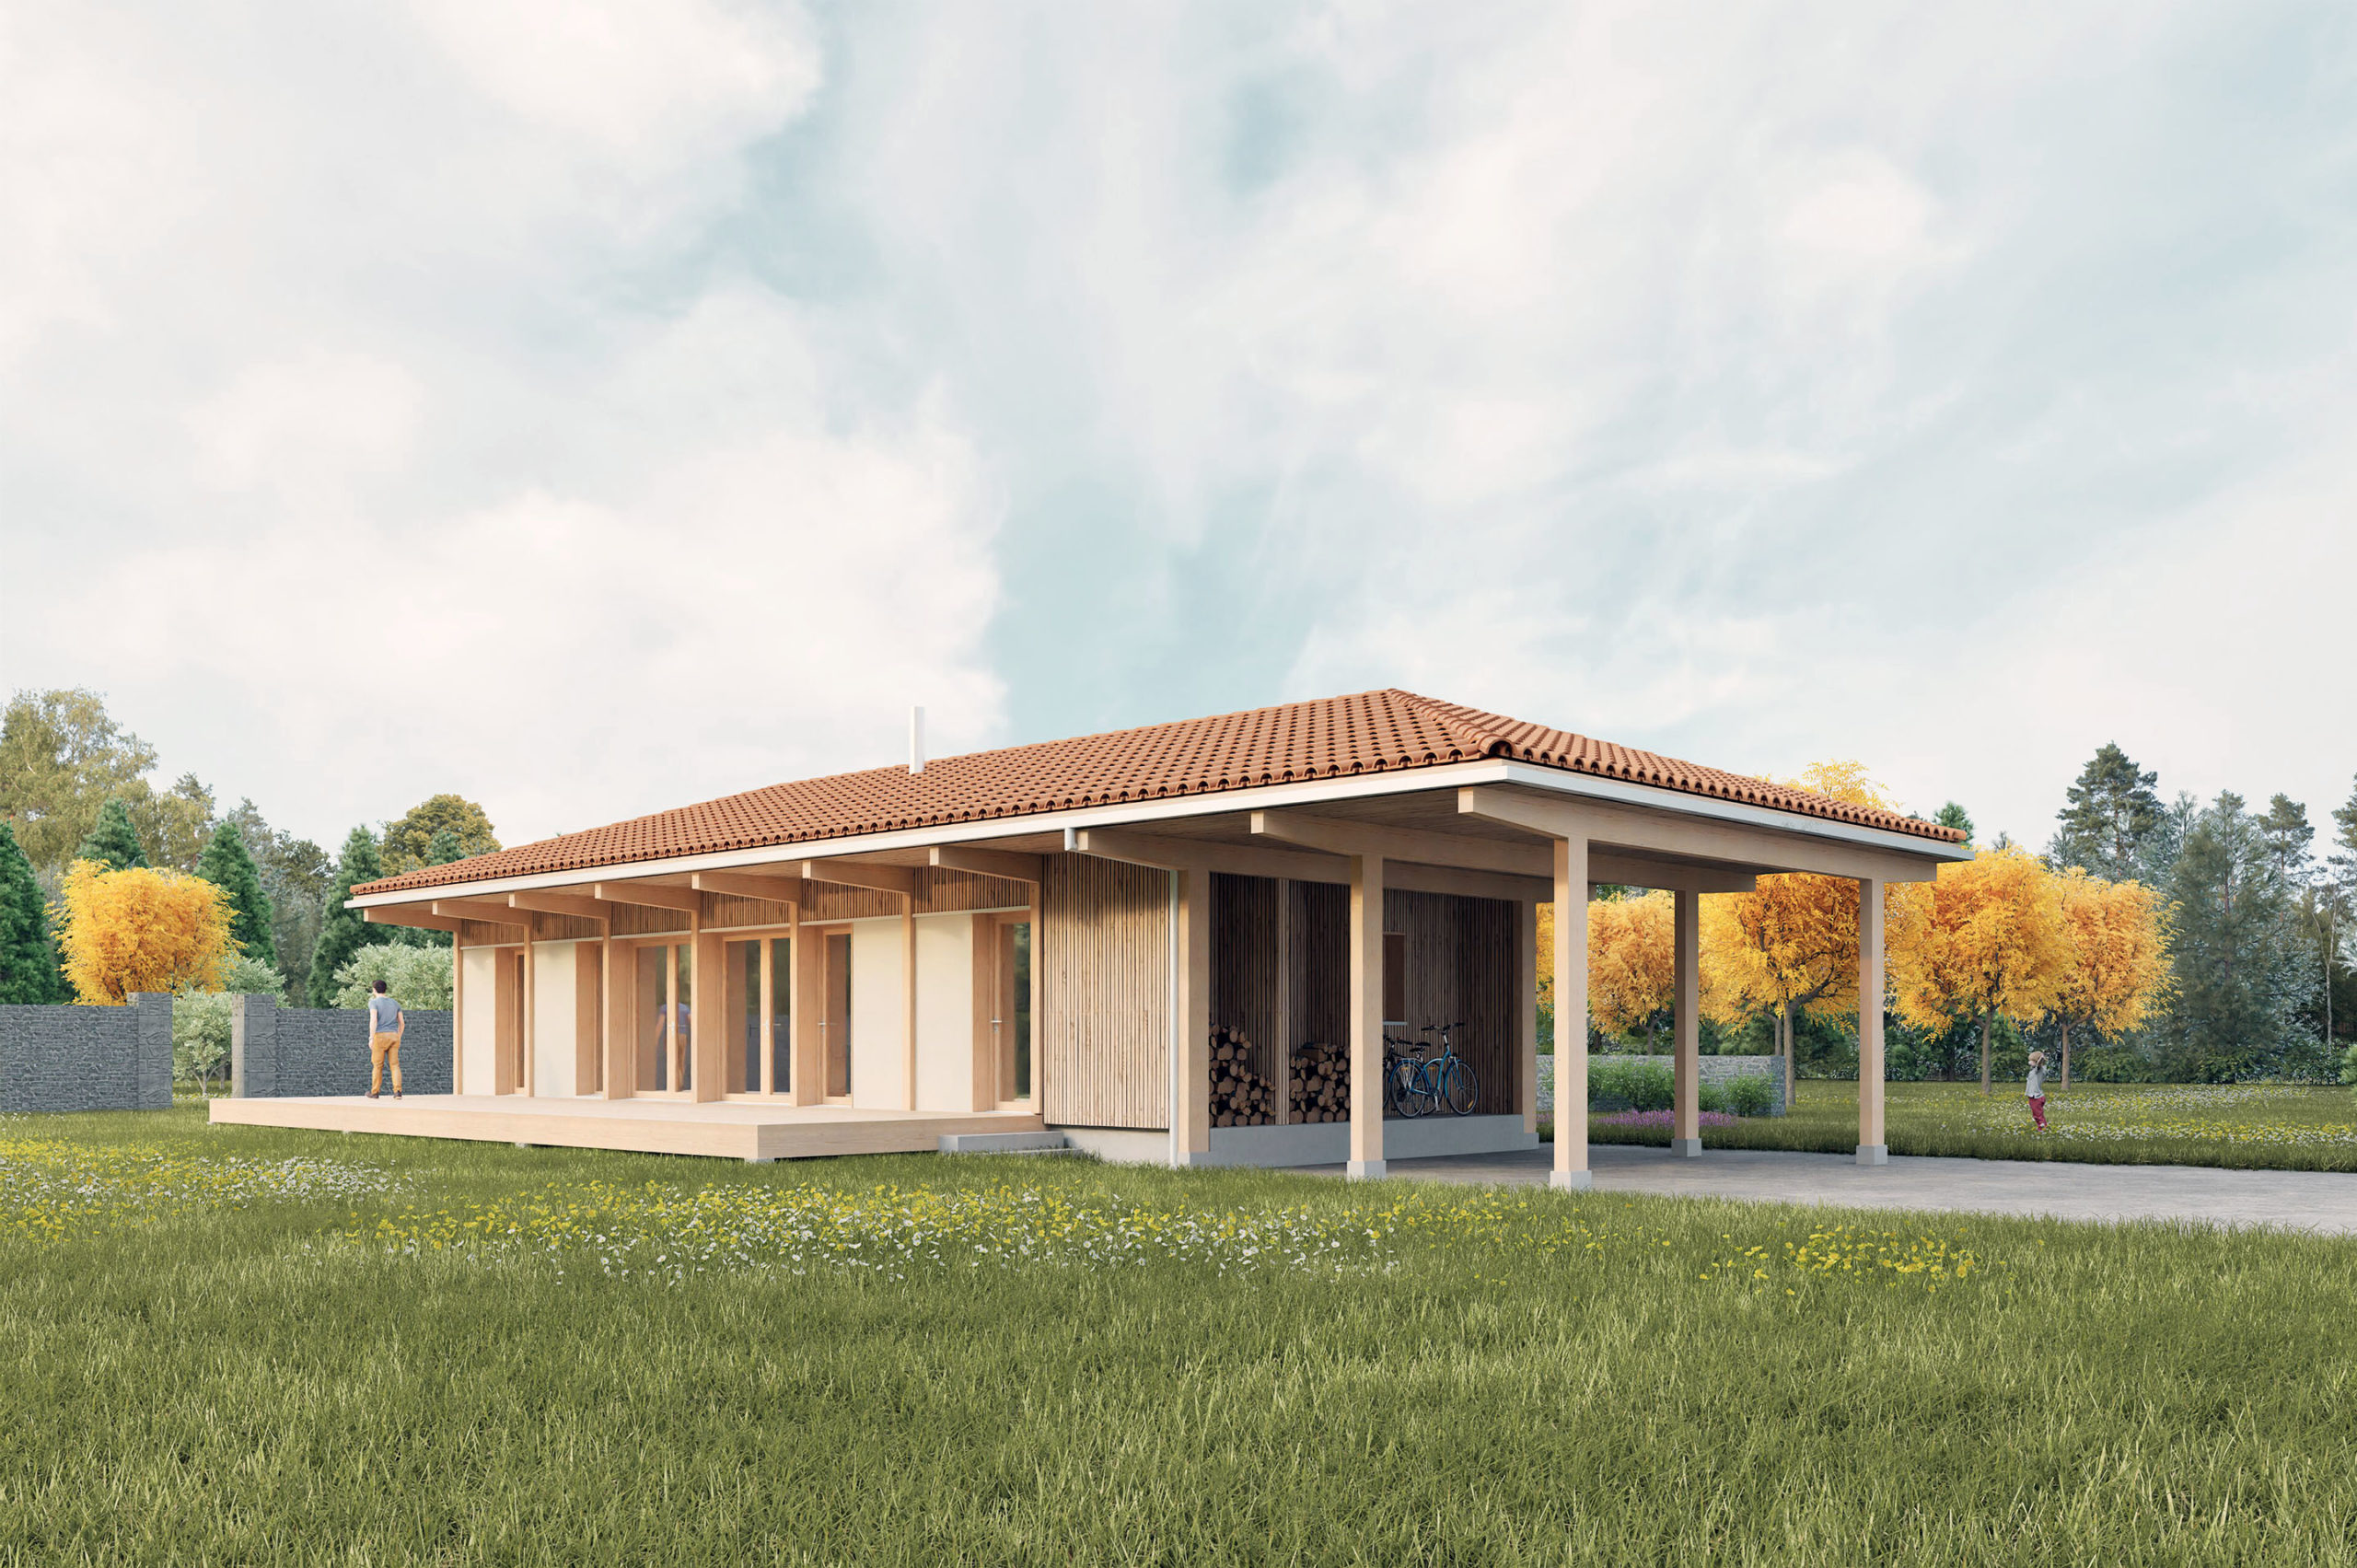 La maison Tori est un projet d'étude d'une maison éco-conçue. Elle est construite en bois et en matériaux bio sourcés. Conception Robin DENIS Architecte.